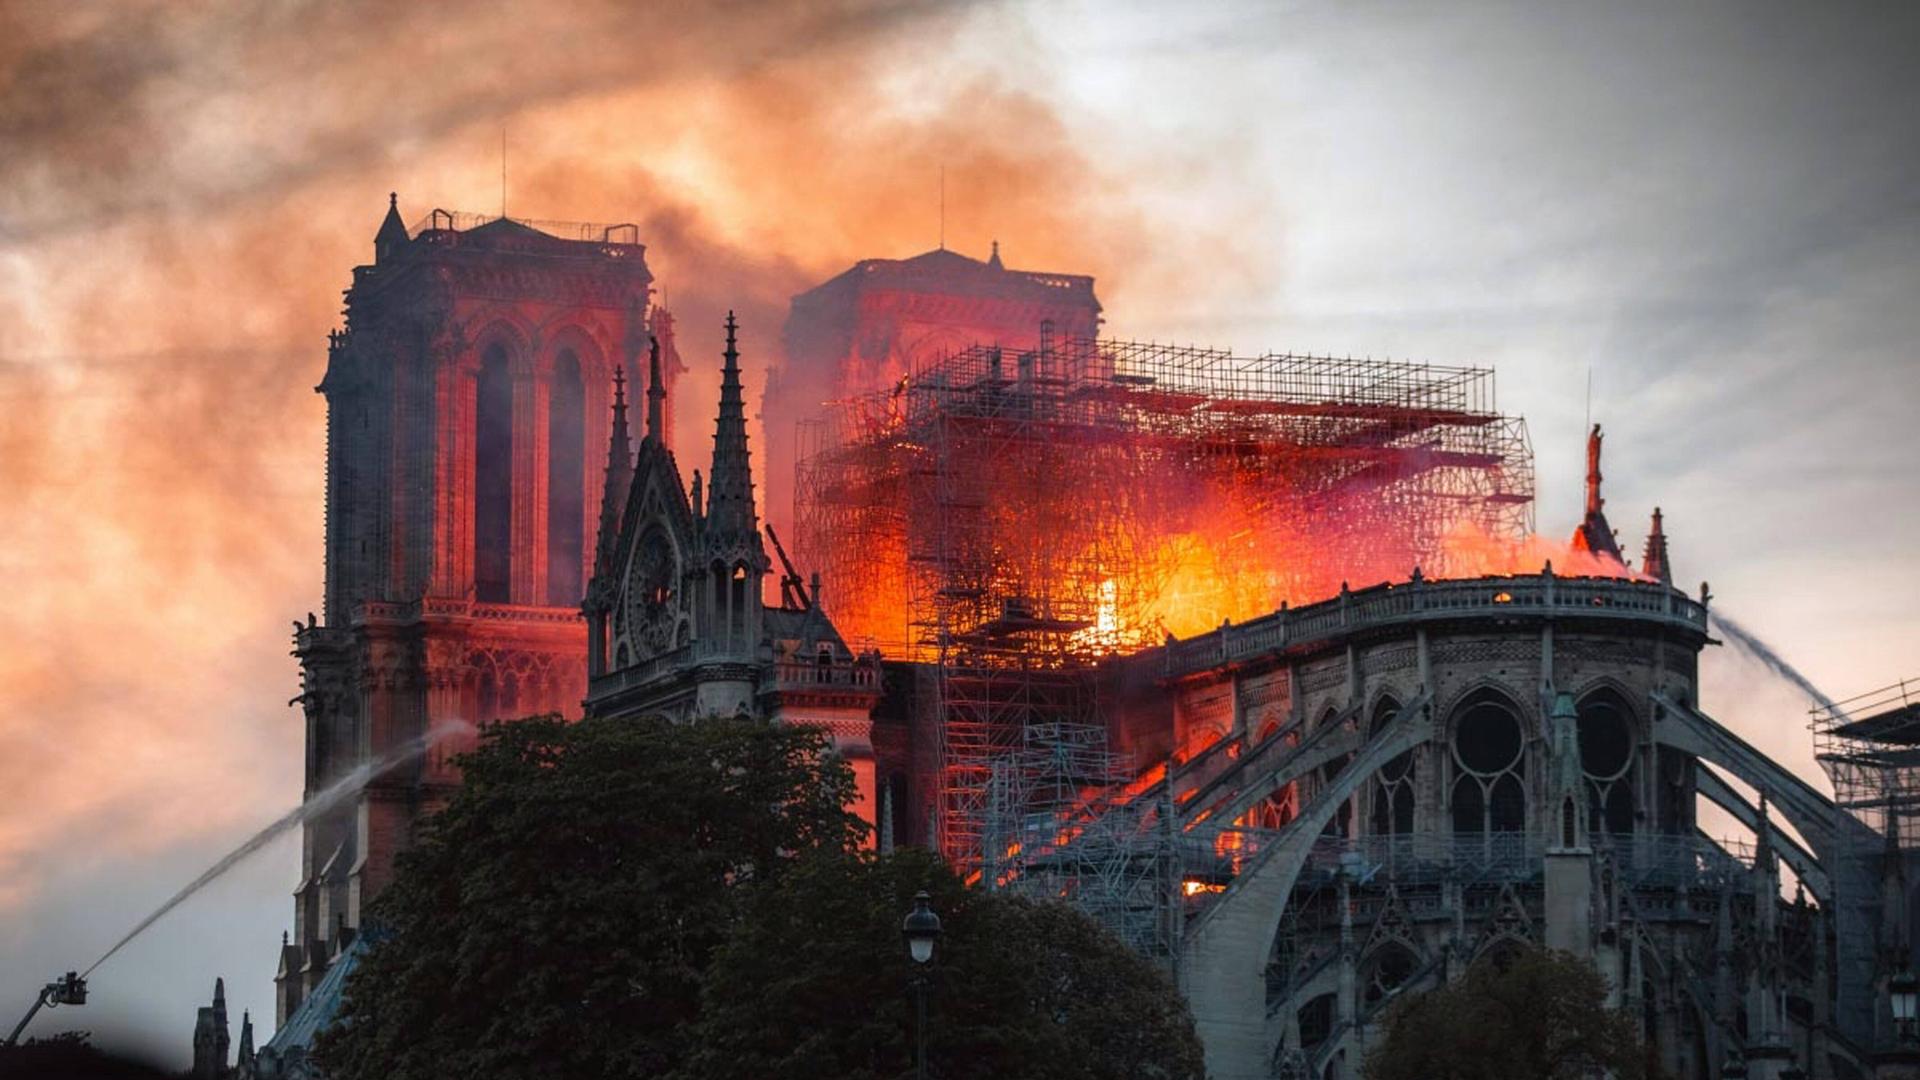 Die bekannte Pariser Kirche brennt, die Flammen schlagen durch den Dachstuhl, am Rand wird versucht, mit Wasser zu löschen.